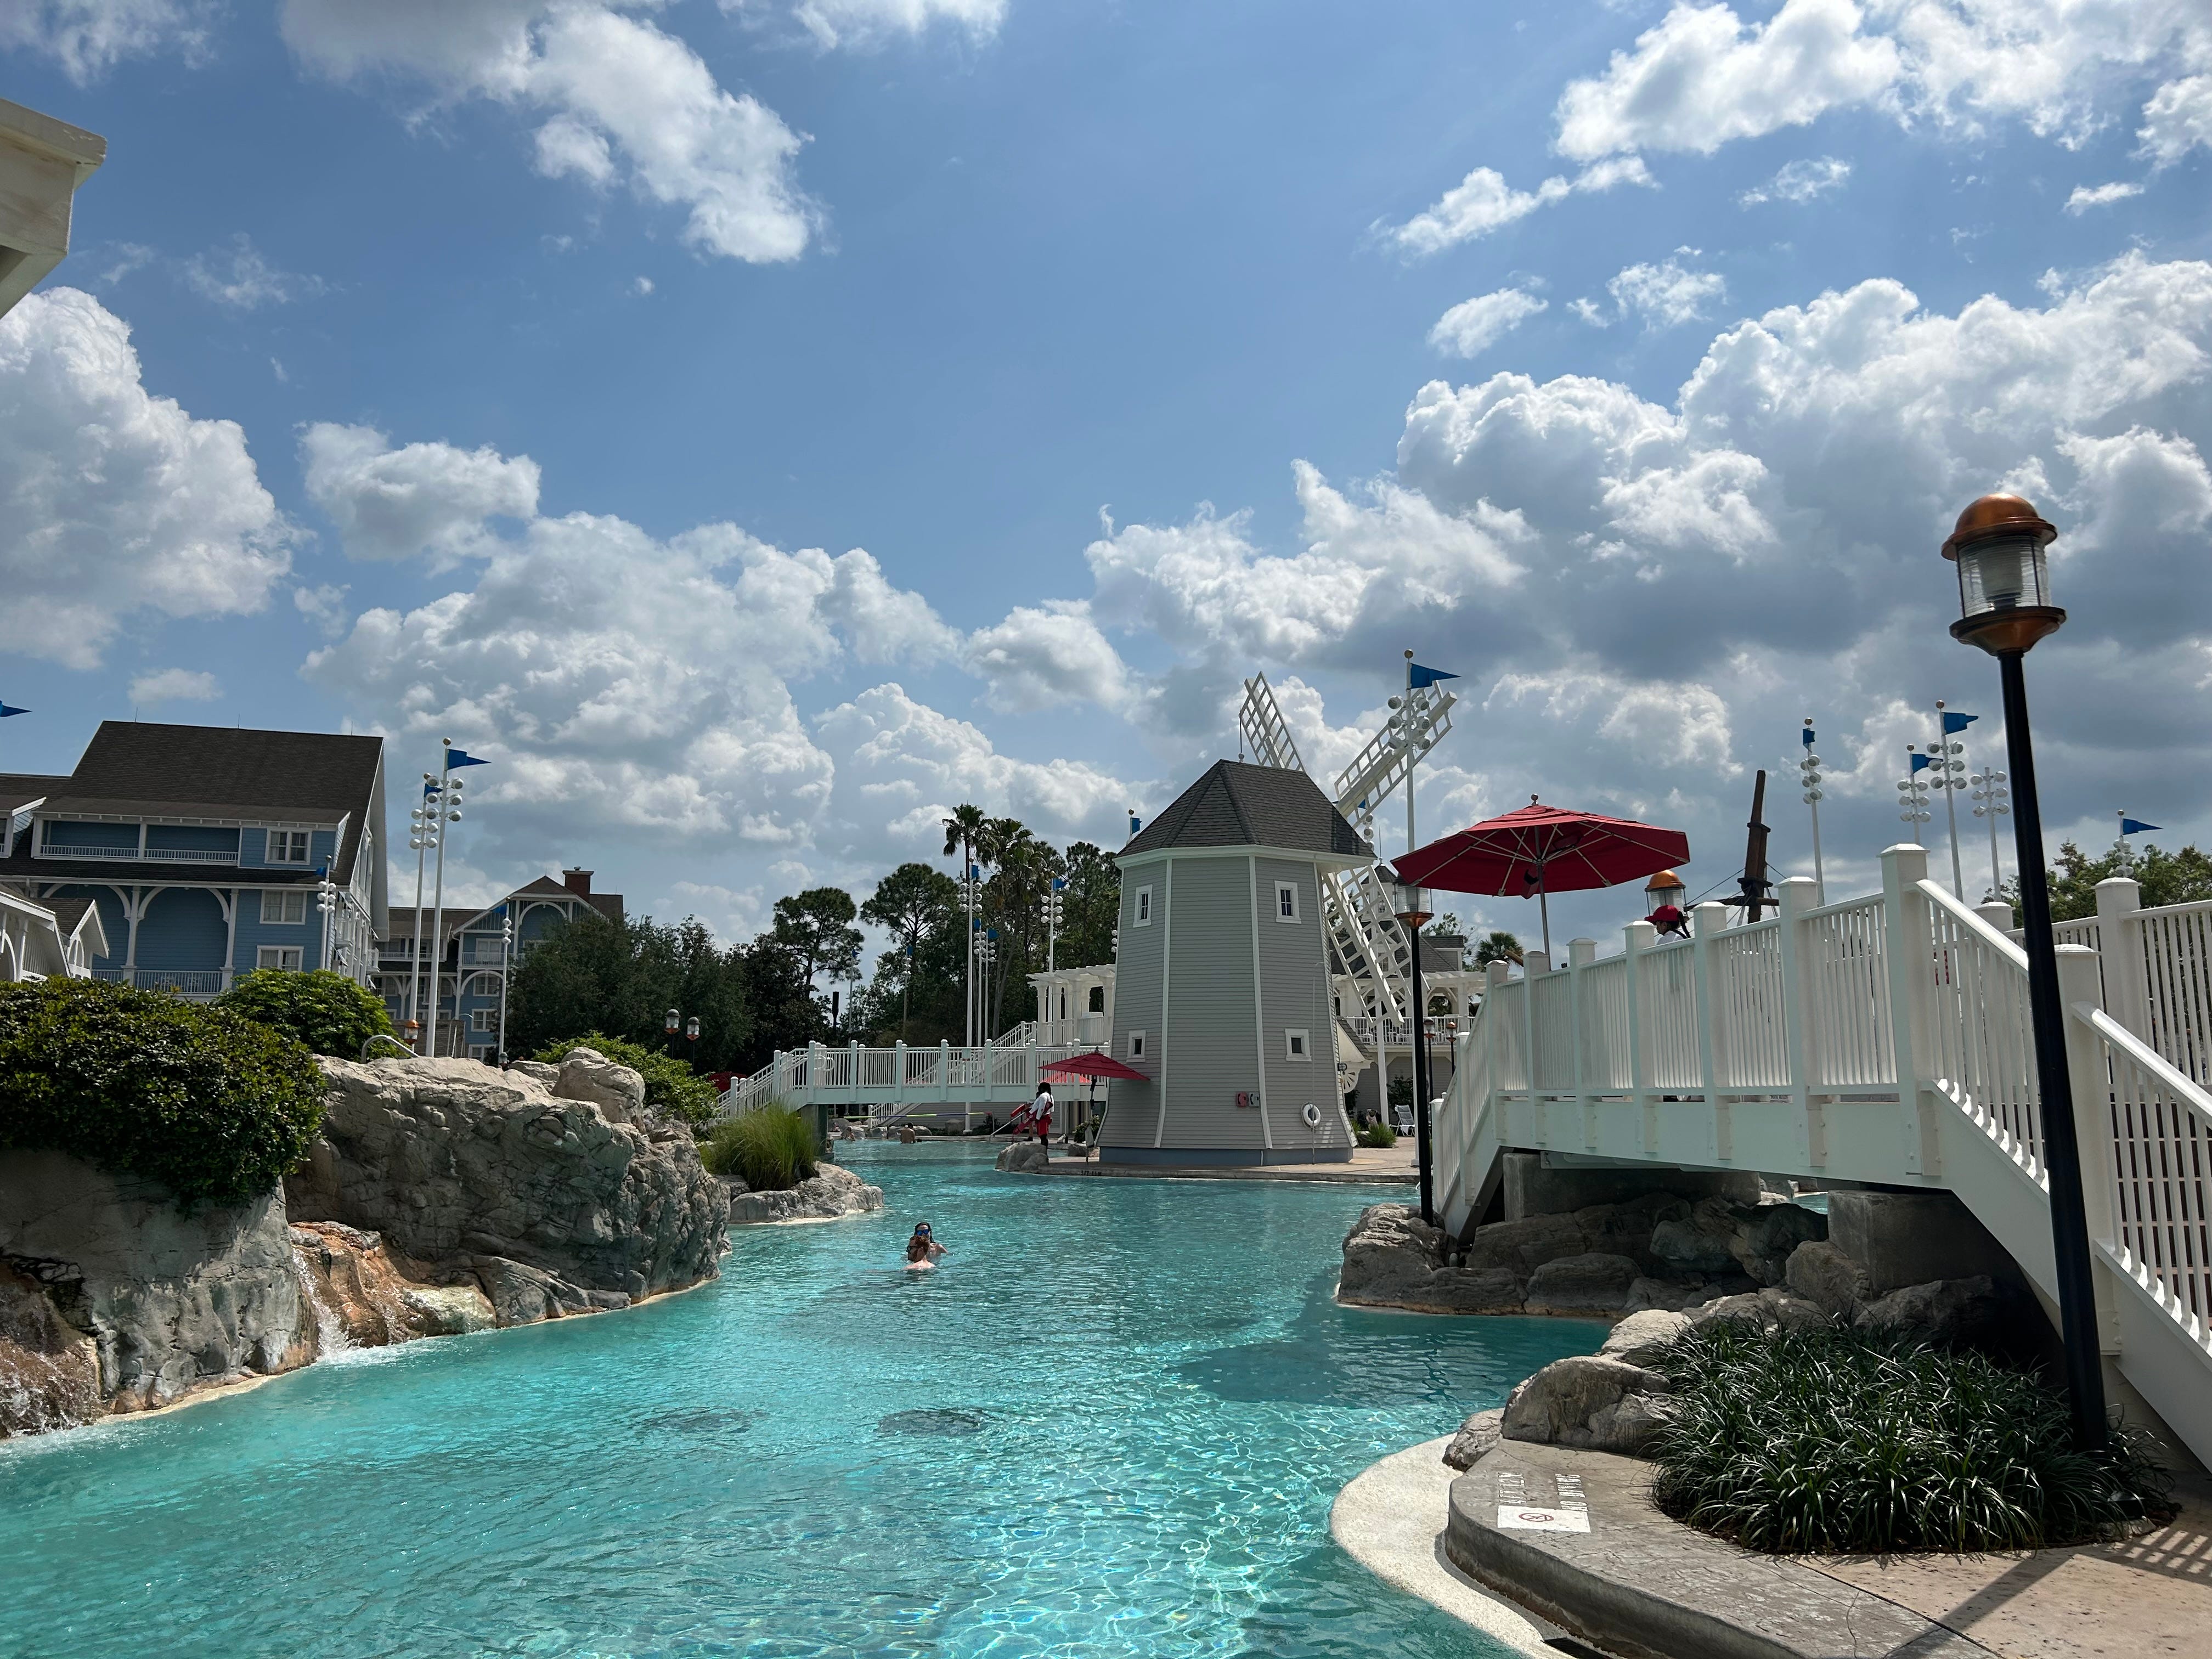 Blick auf den Pool im Disney Yacht Club mit einer künstlichen Windmühle daneben